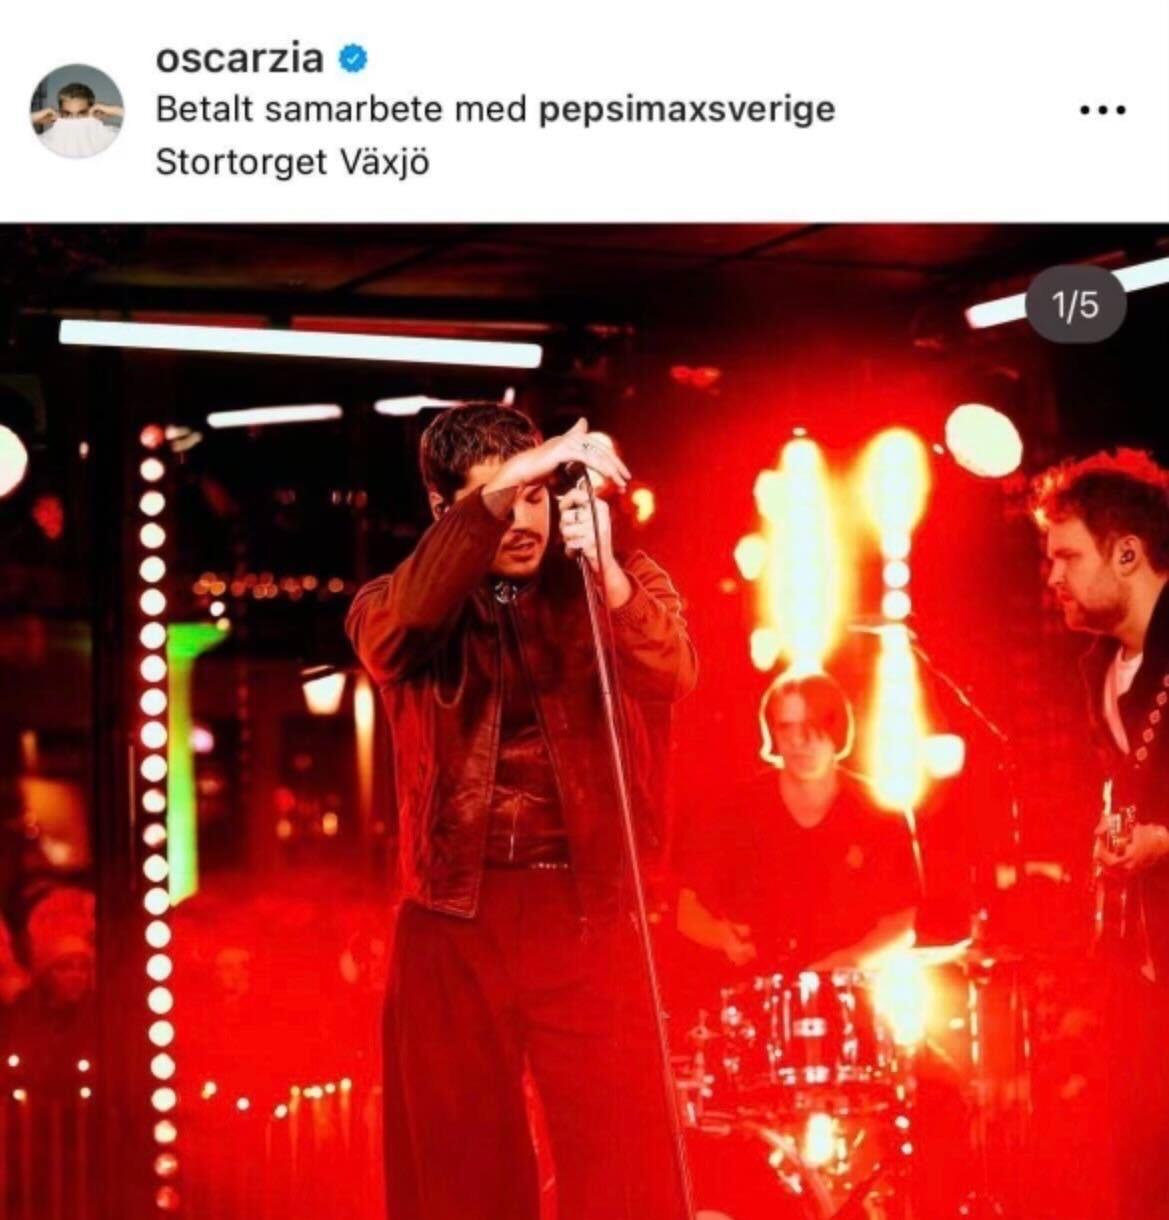 Oscar Zias första Instagraminlägg. 